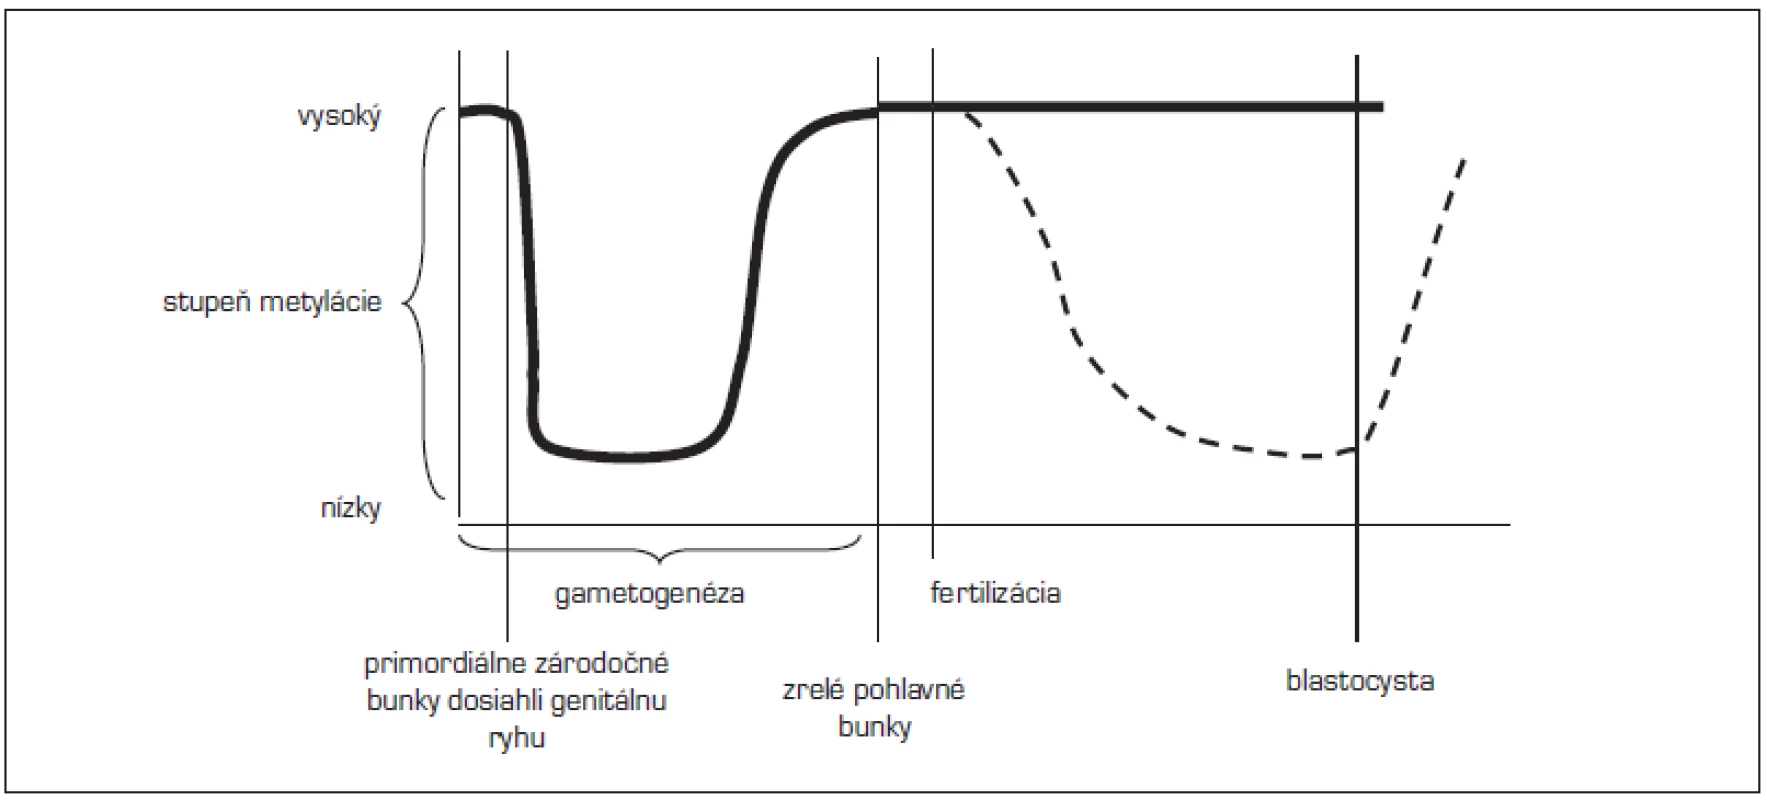 Načasovanie epigenetických znakov (upravené podľa Lucifero, 2004).
&lt;em&gt;(Po obdobie fertilizácie sa metylujú imprintované gény i ostatný genóm približne rovnako, po fertilizácii zostávajú imprintované gény chránené od demetylácie – hrubá čiara, kým ostatný genóm sa demetyluje a znovu metyluje – prerušovaná čiara)&lt;/em&gt;